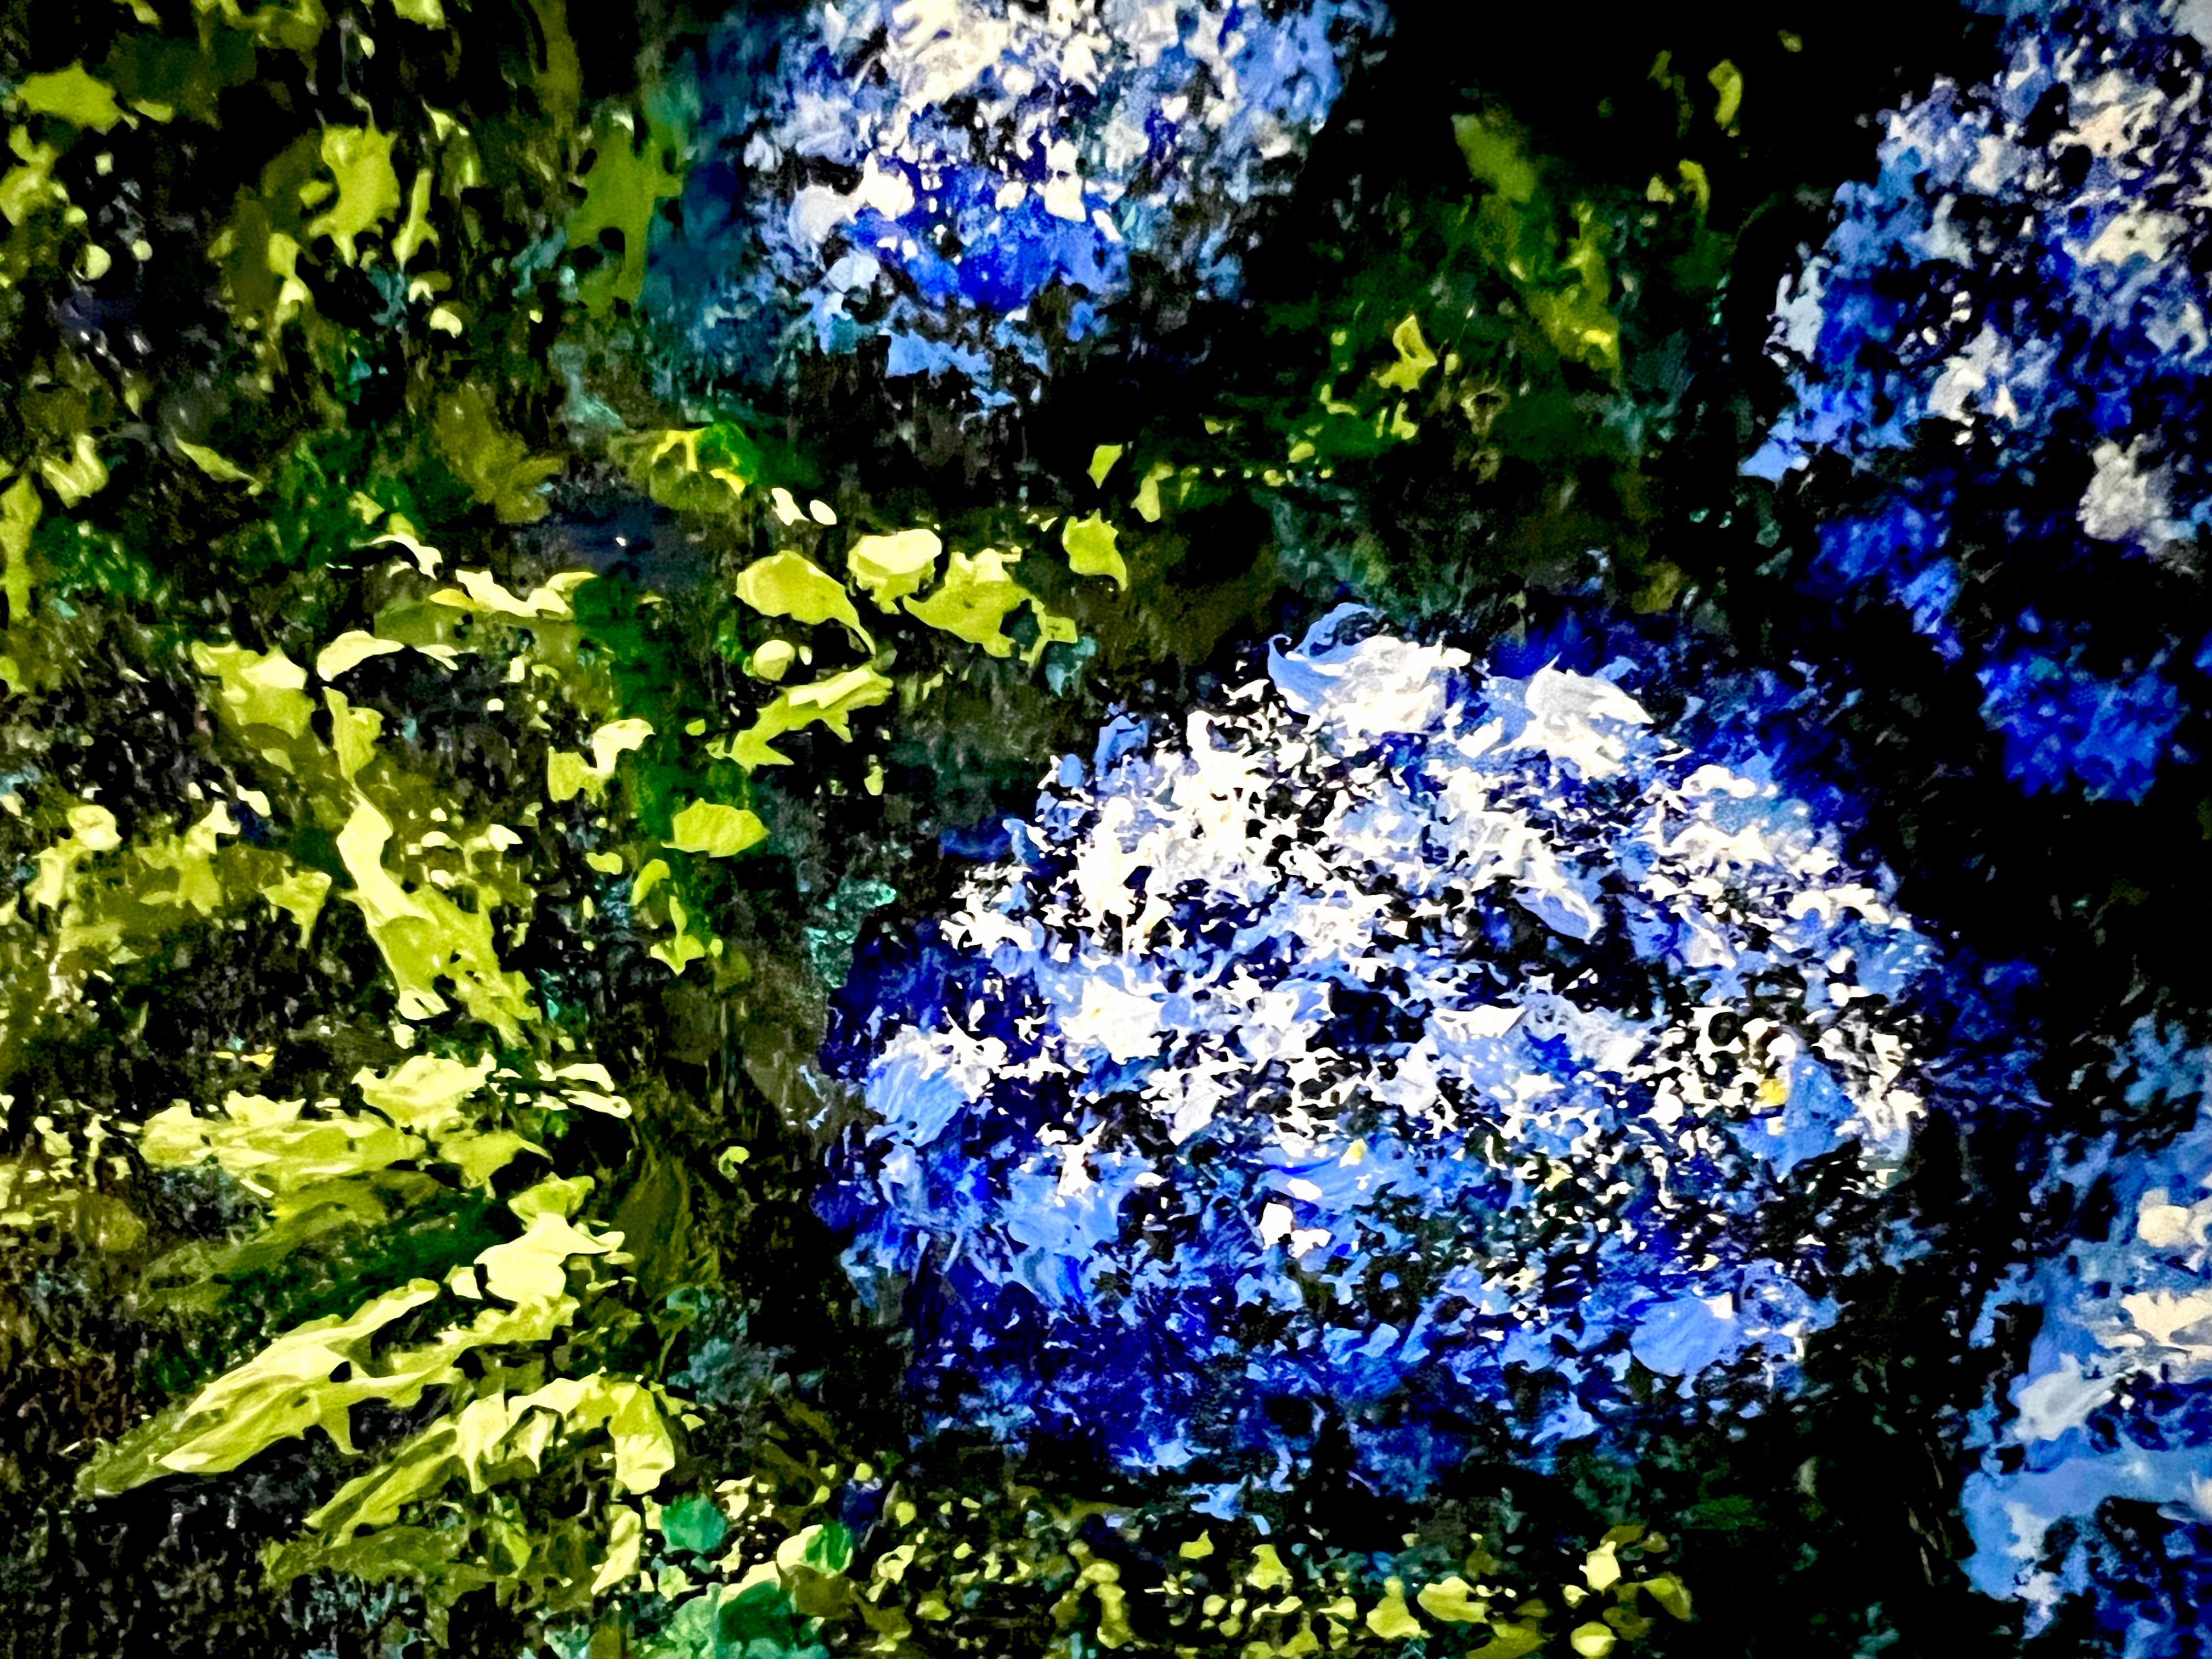    Dreamscape. Impasto painting. Impressionism. nature, flowers, sea, landscape. For Sale 4